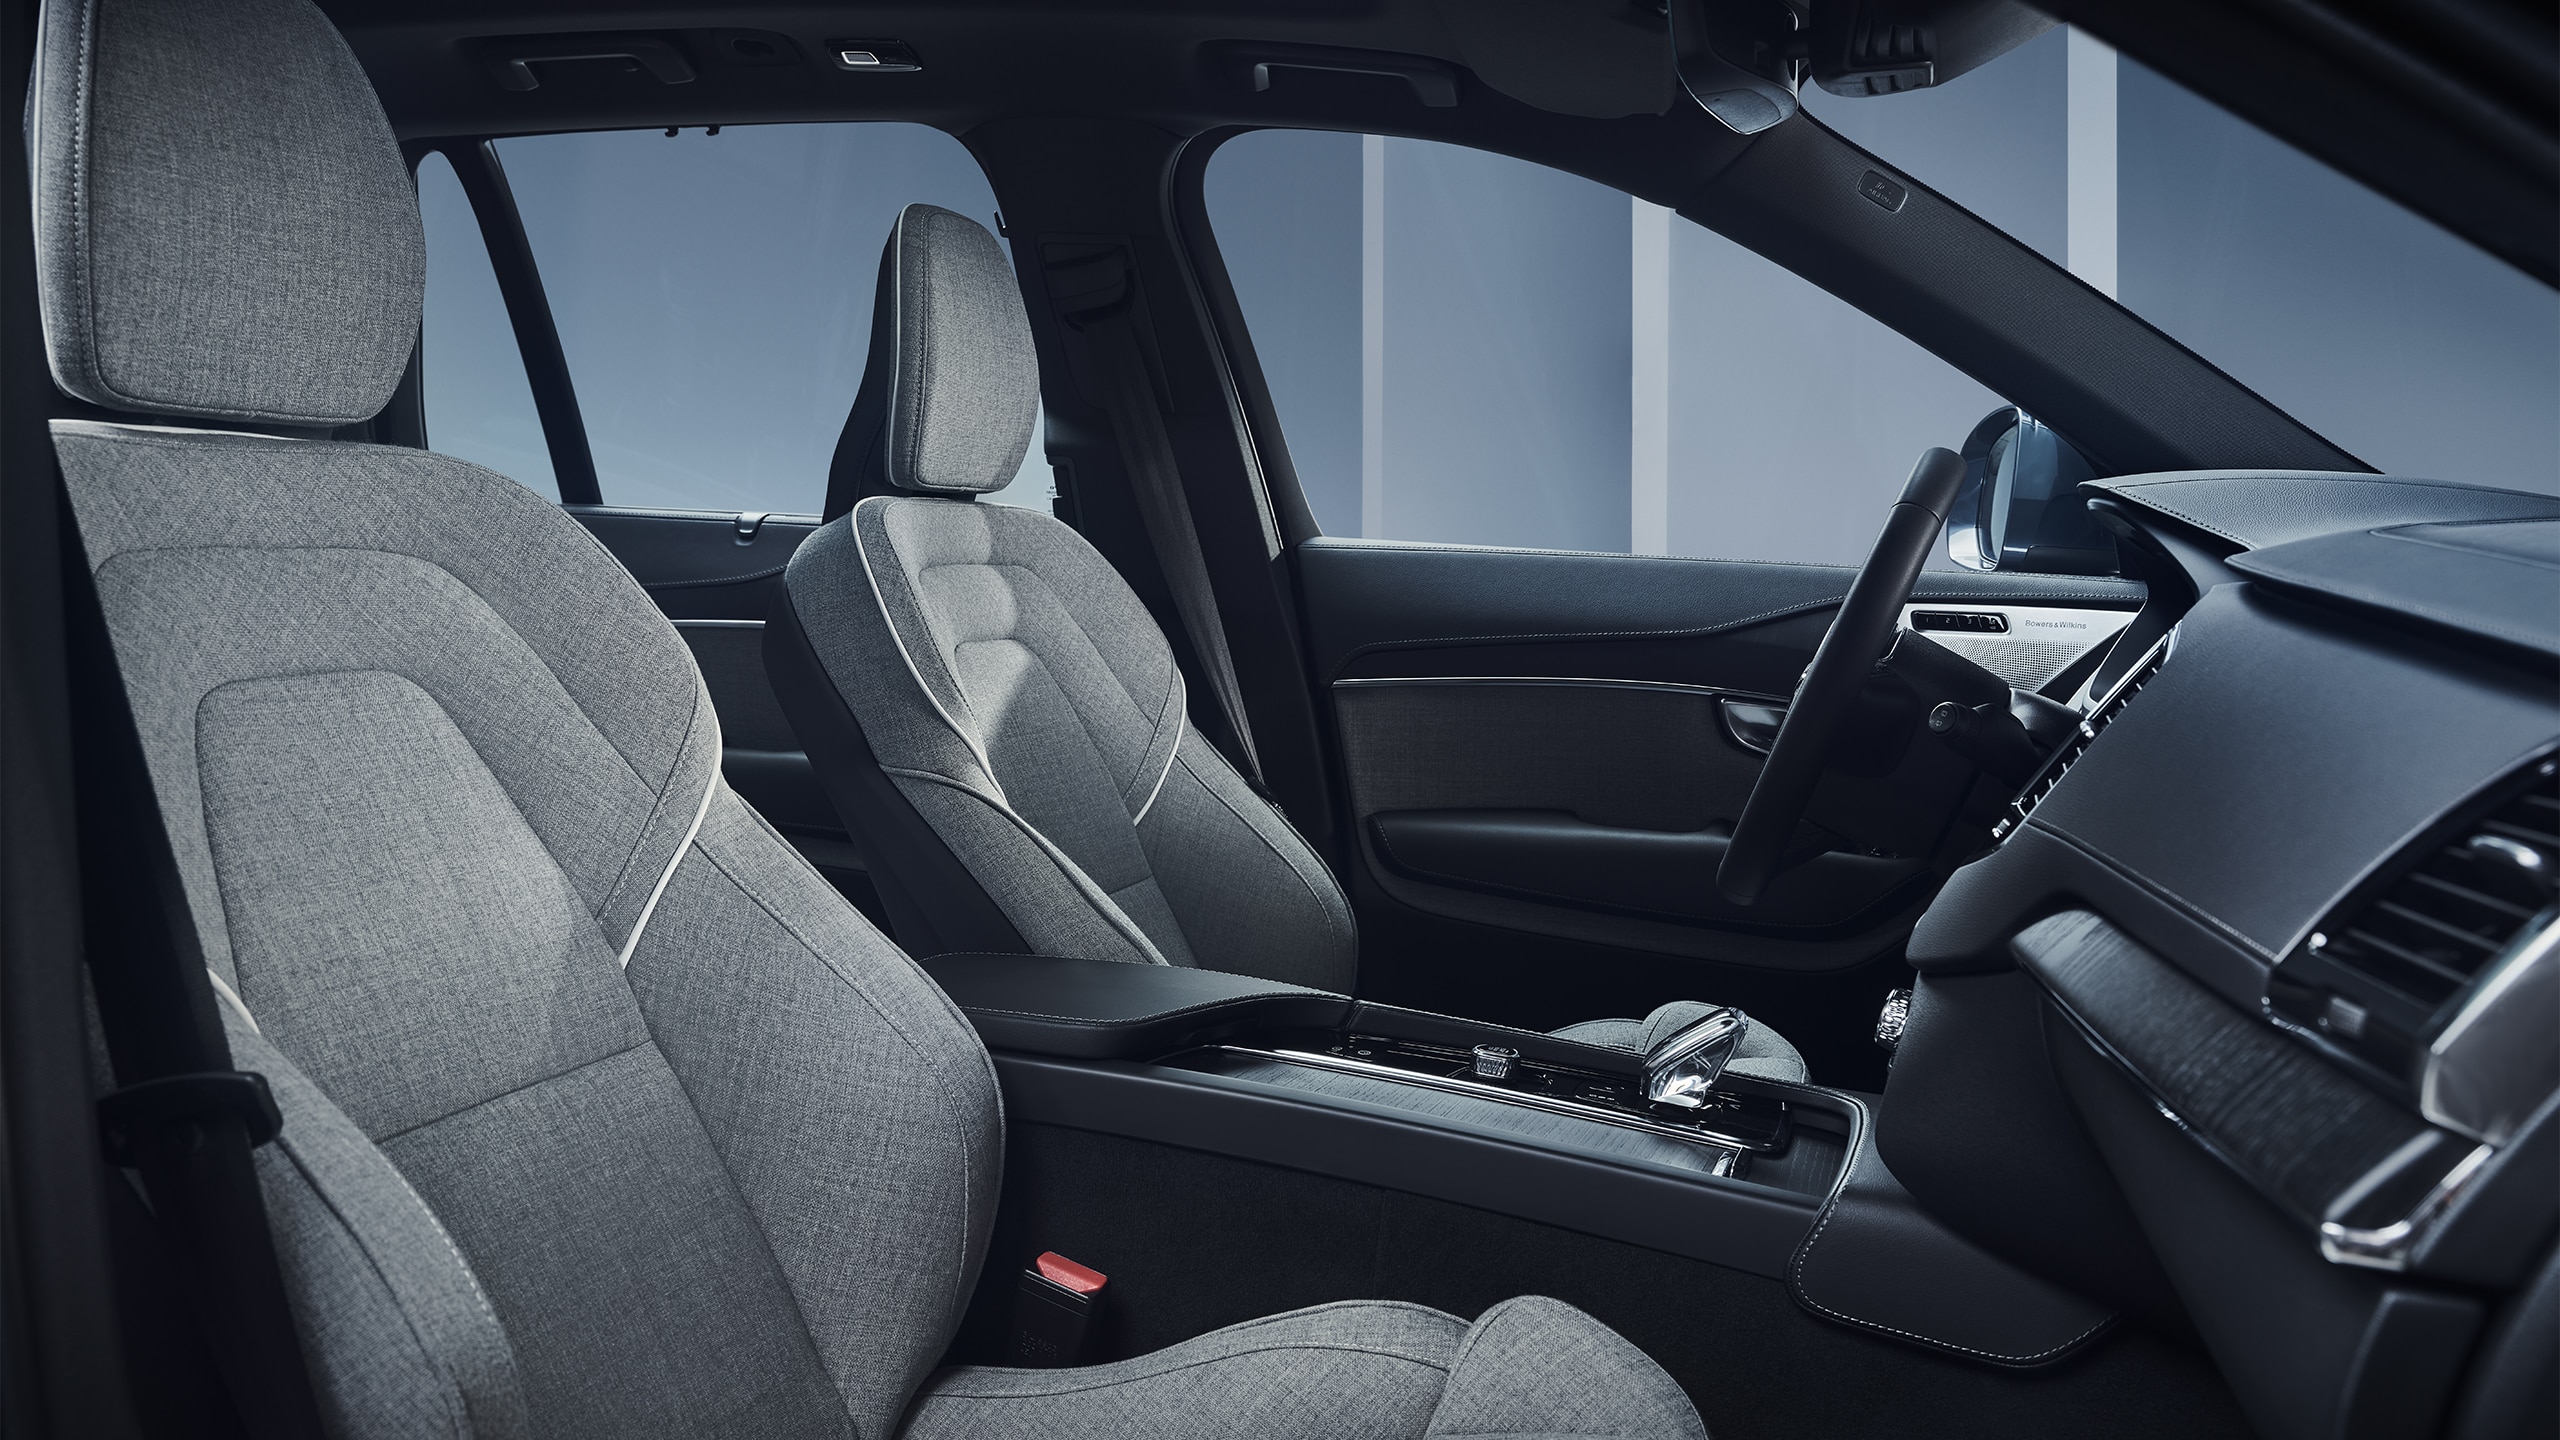 Salpicadero del Volvo XC90 Recharge híbrido enchufable, consola central y asientos delanteros tapizados en lana.